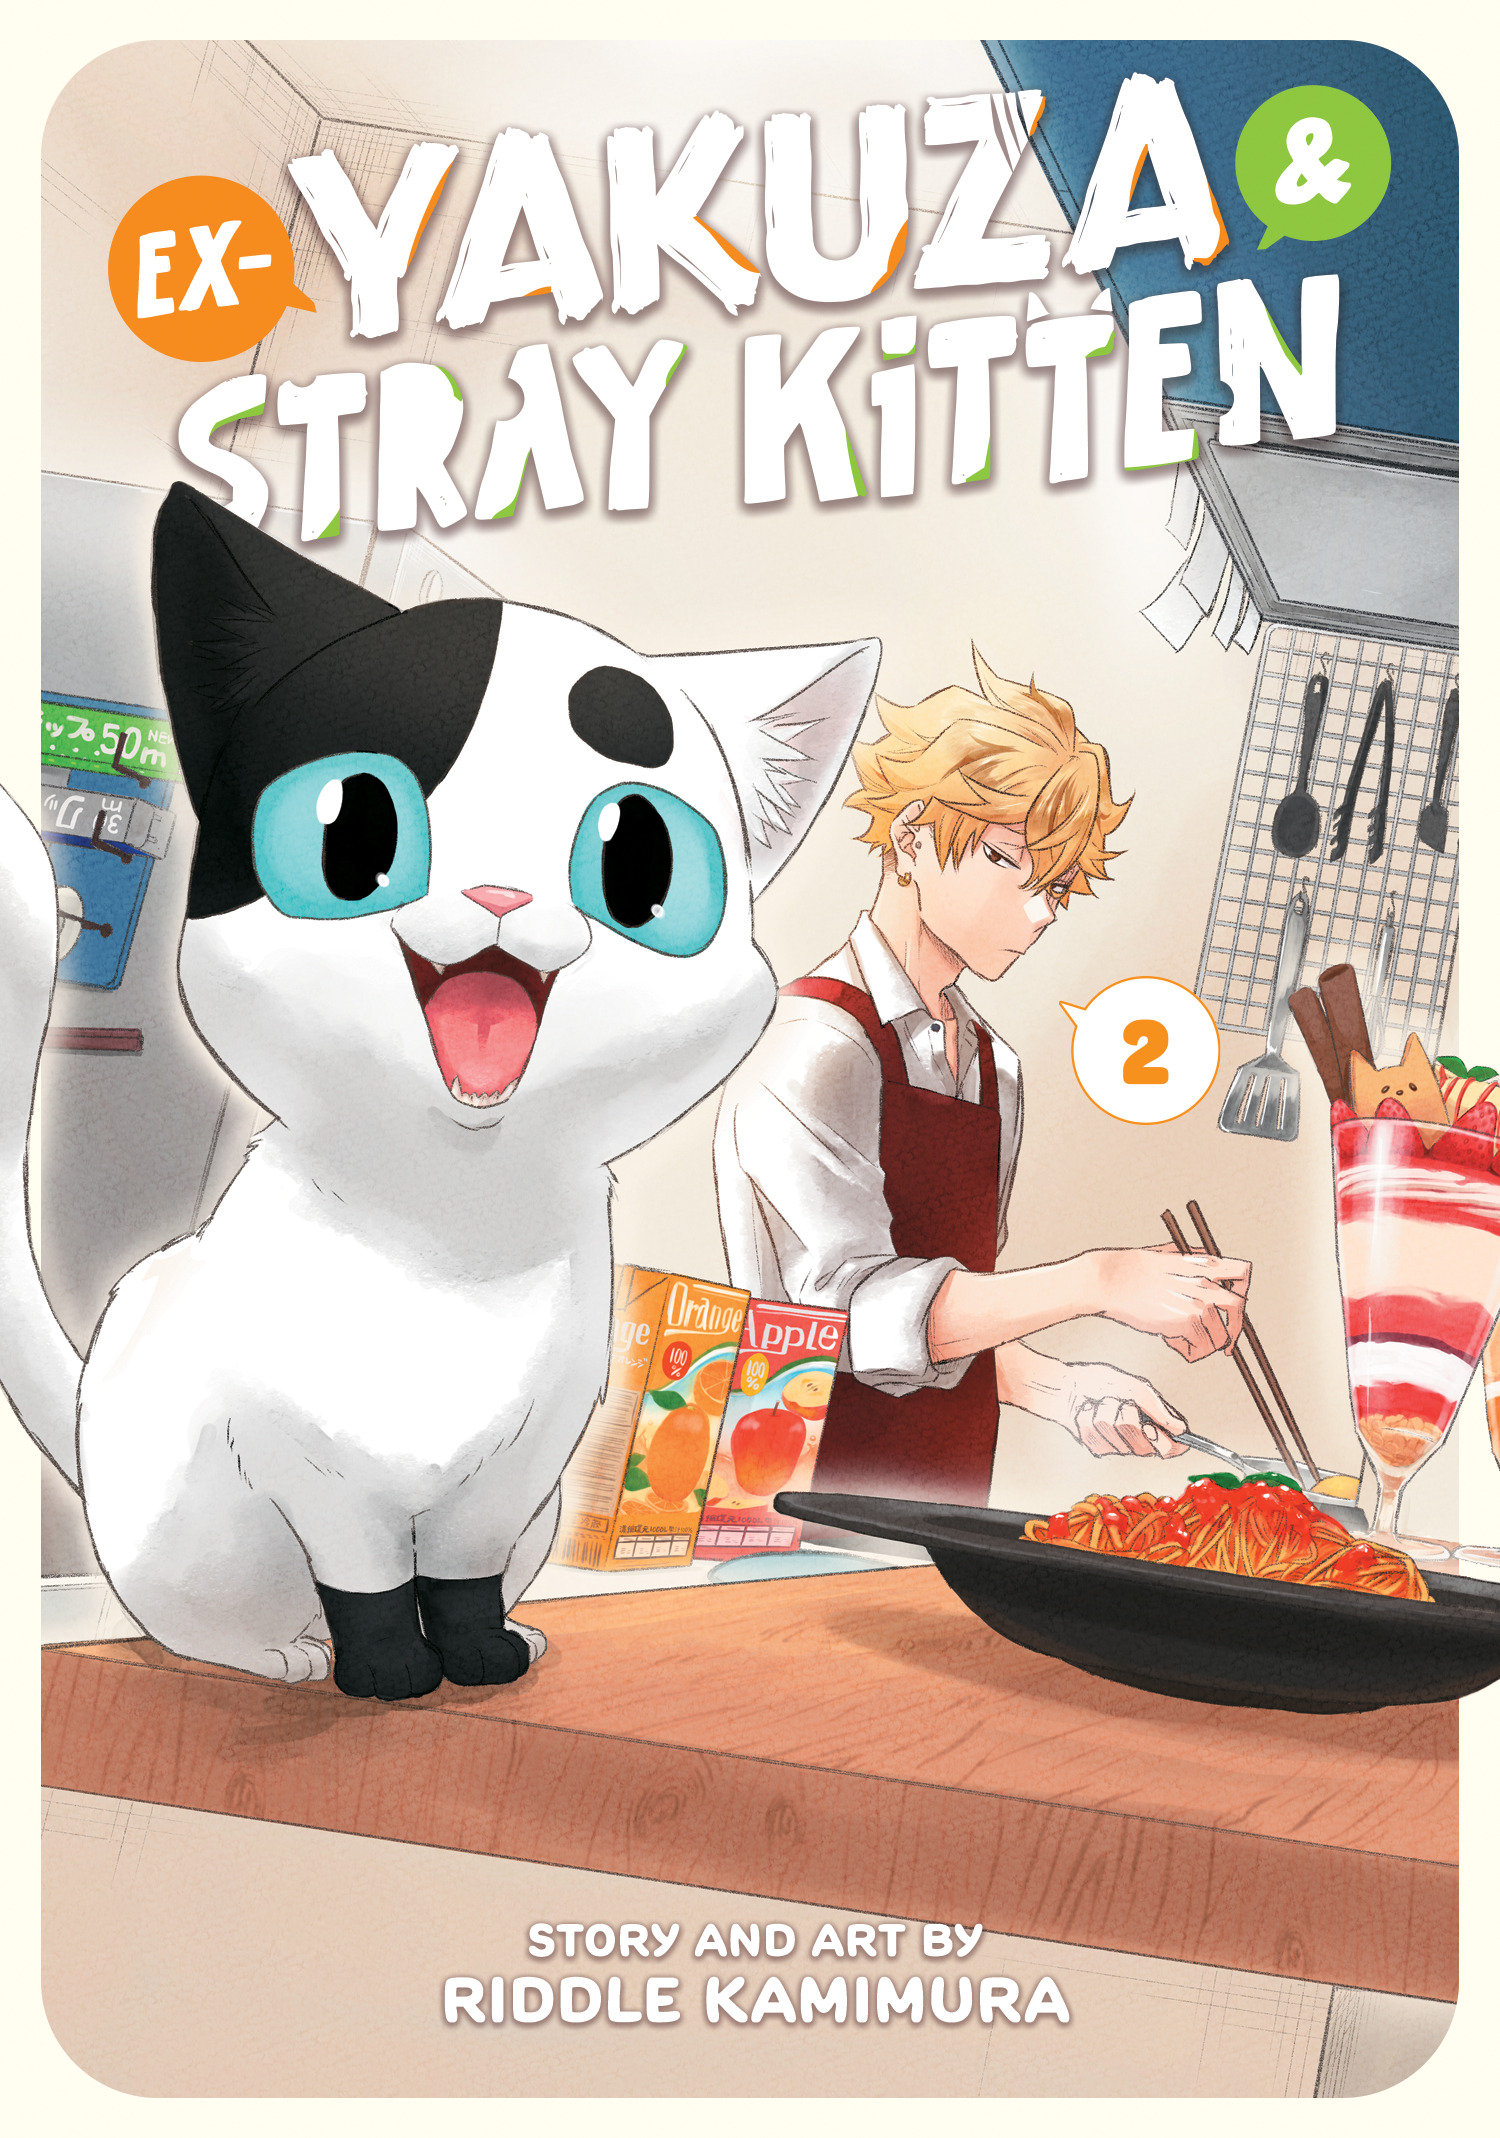 Ex Yakuza & Stray Kitten Manga Volume 2